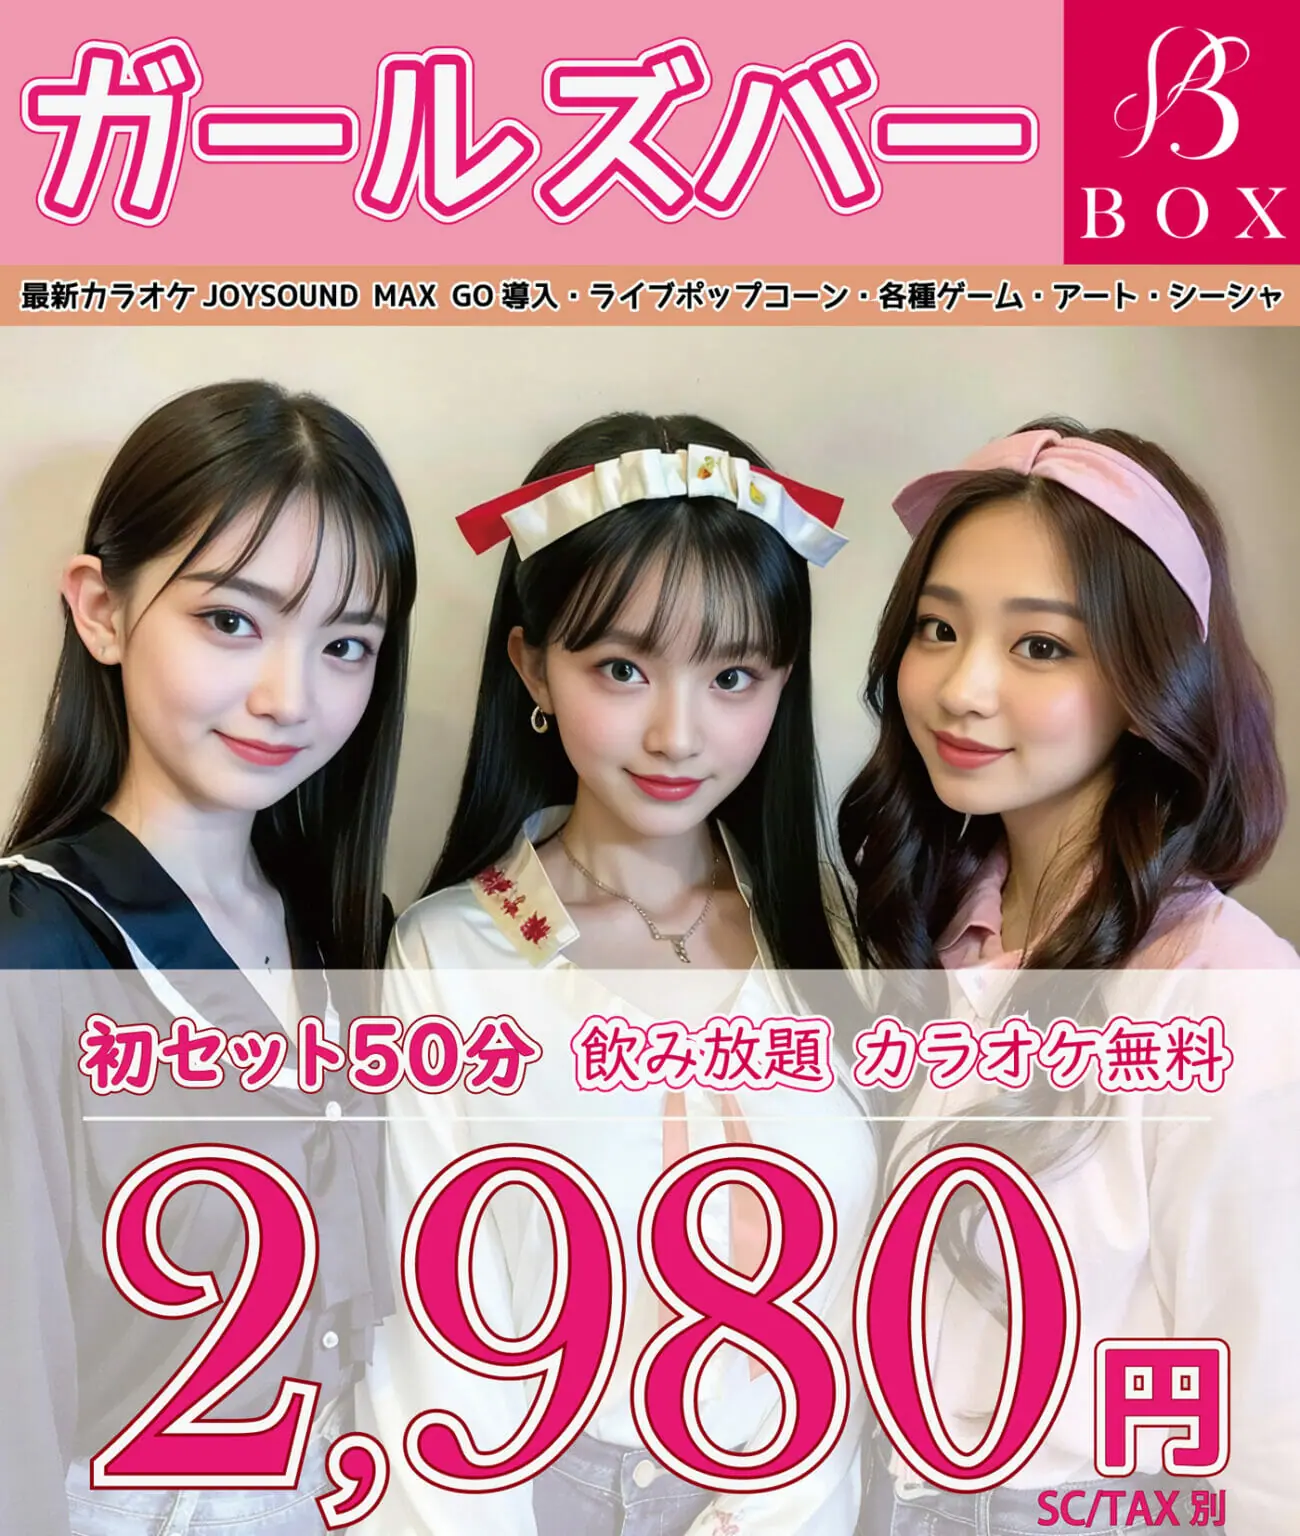 目黒ガールズバーBOXは、初セット2,980円・飲み放題・カラオケ無料